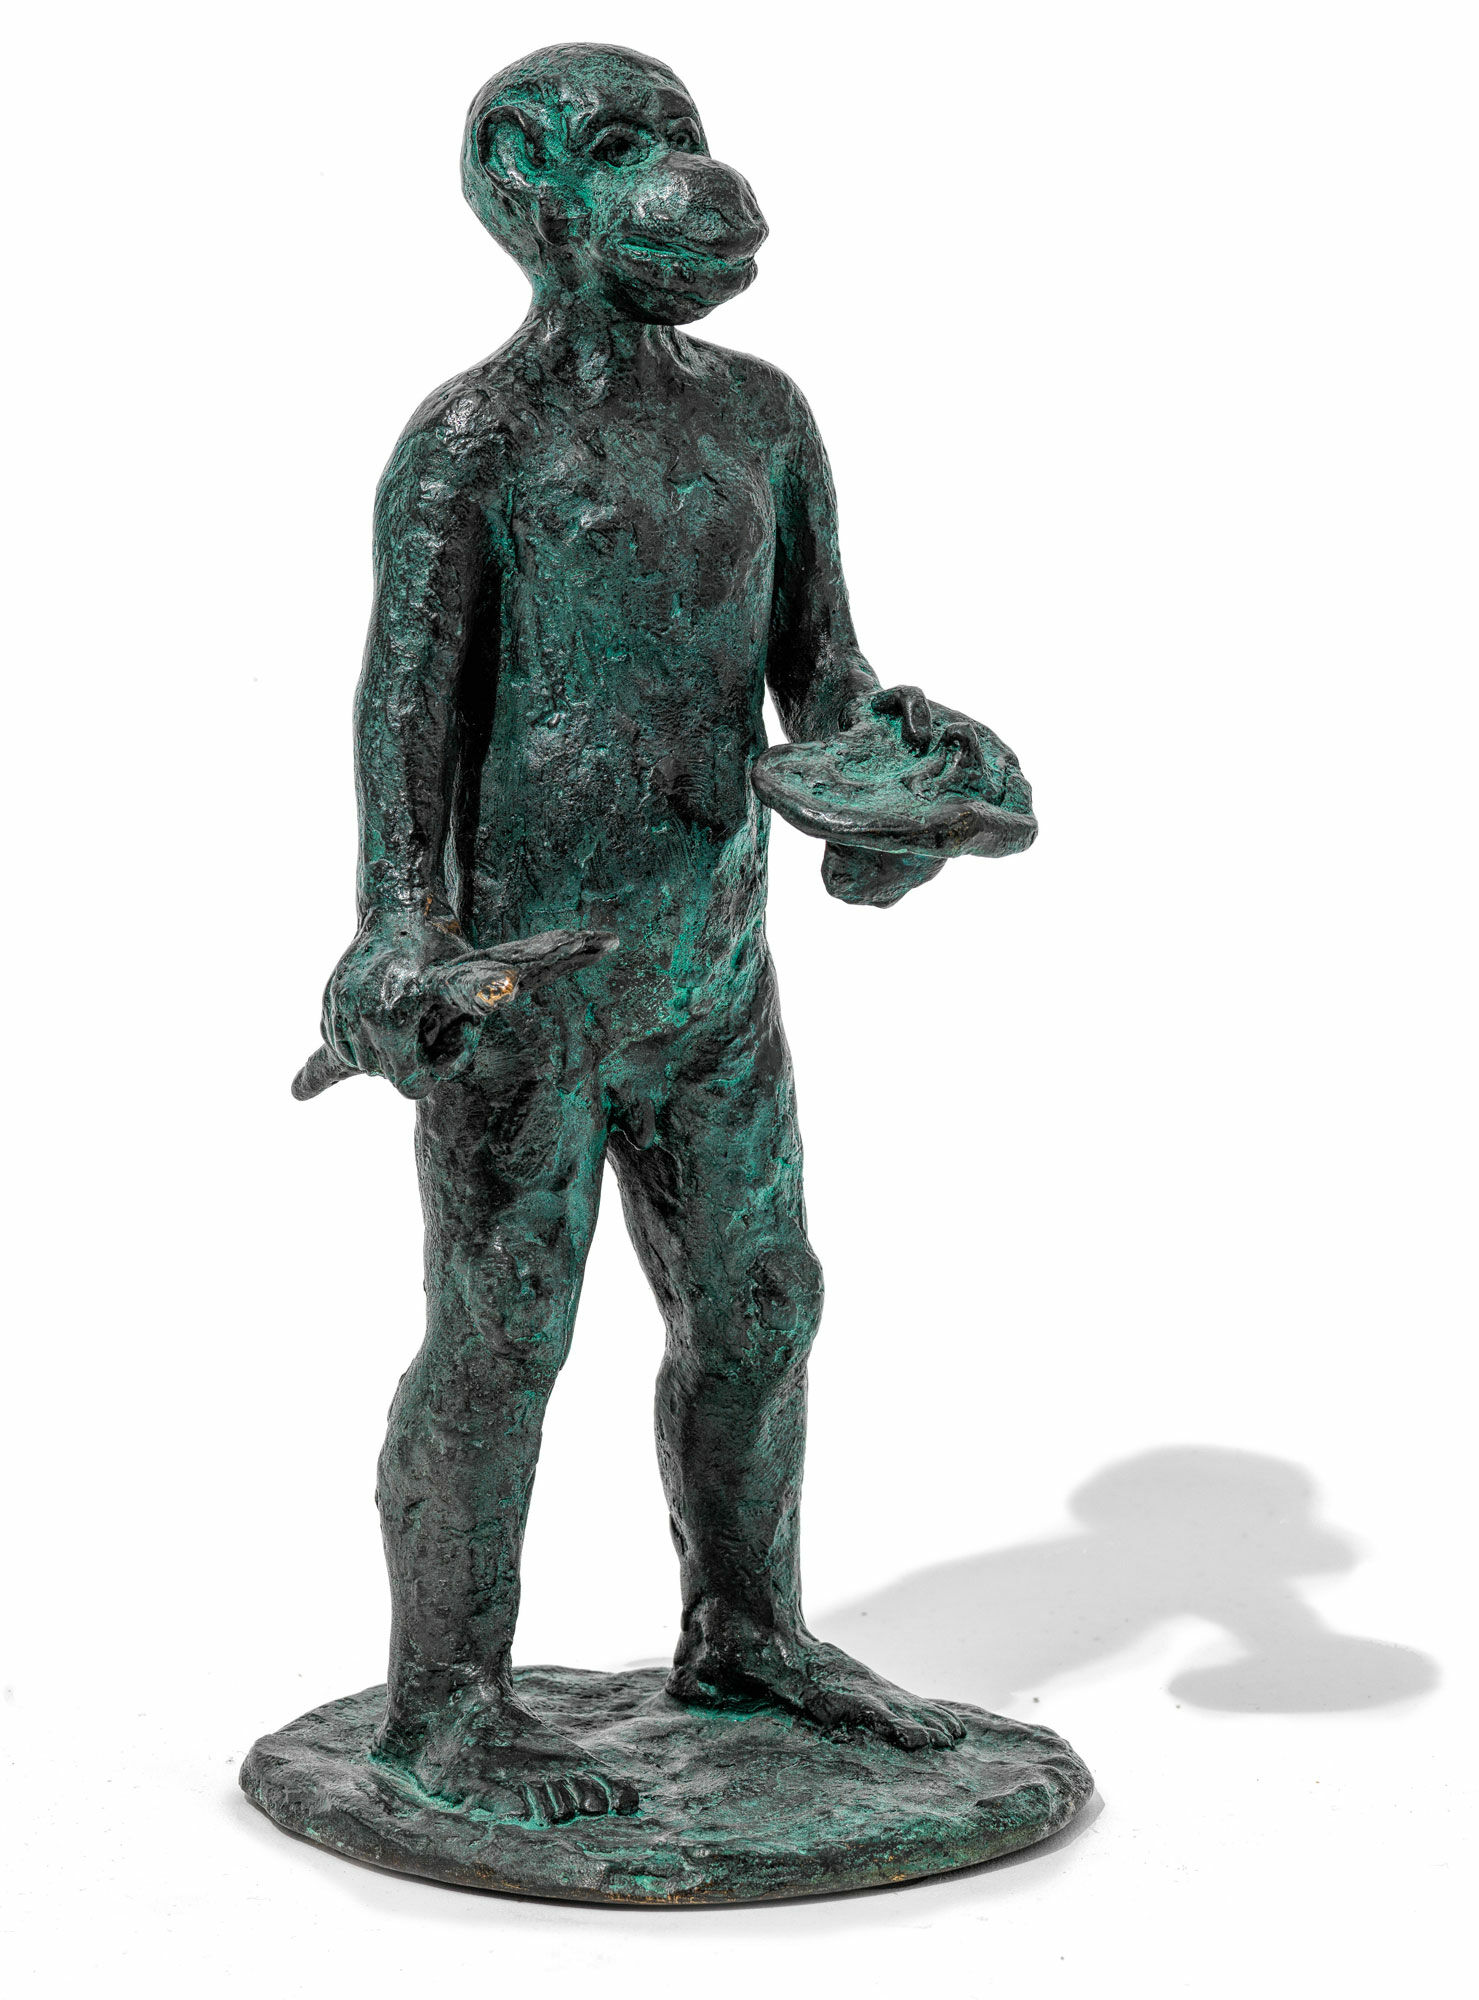 Skulptur "Painters' Tribe" (2002), bronze von Jörg Immendorff